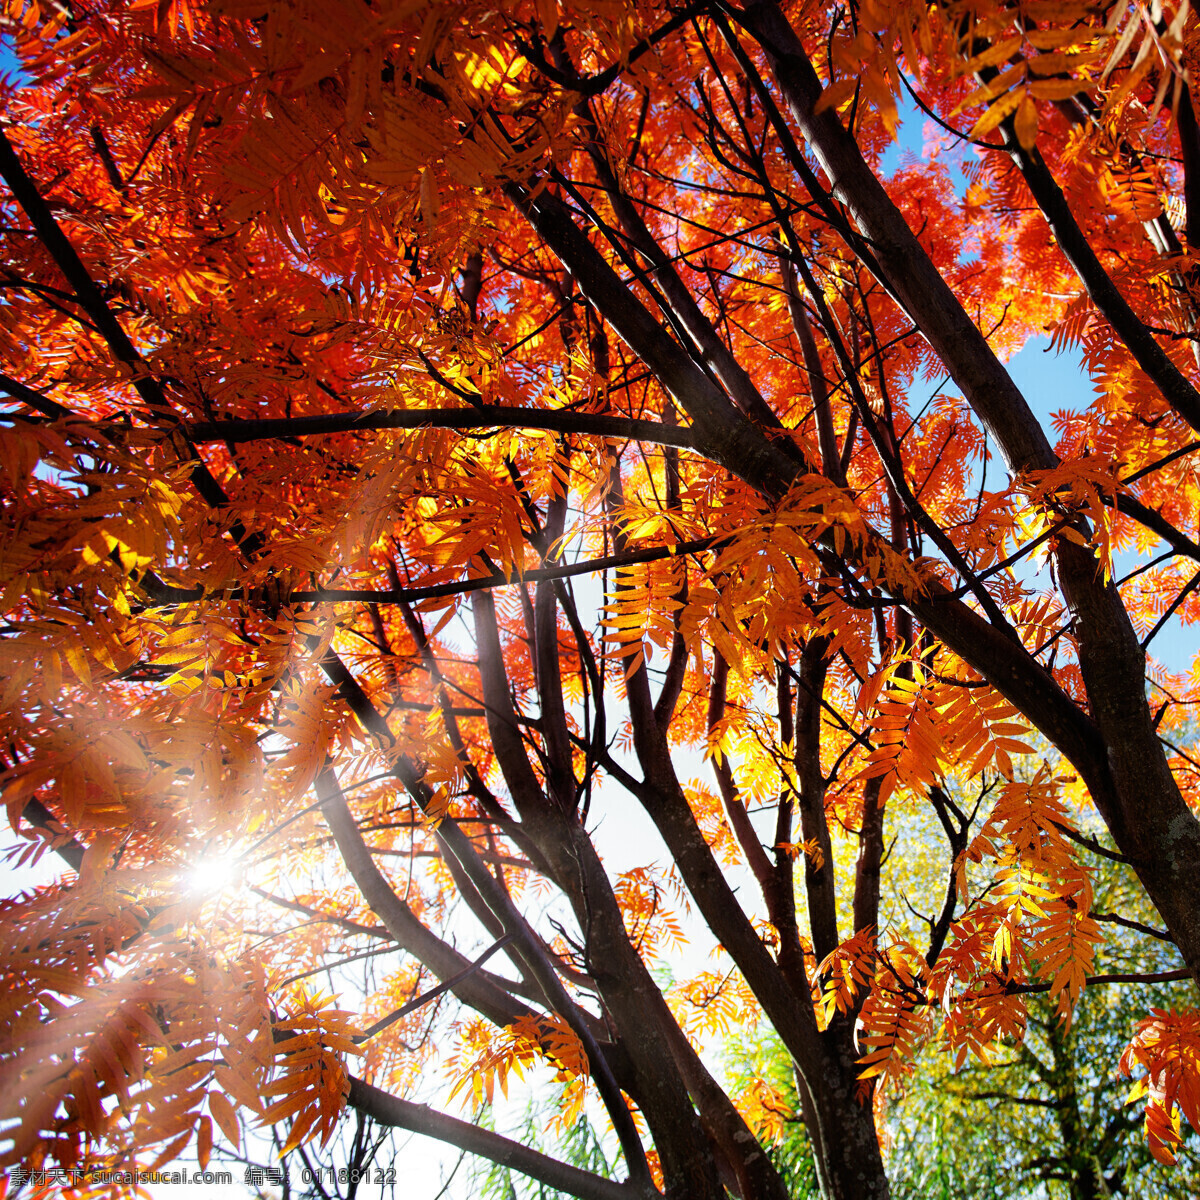 枫树林 枫树 红叶 阳光 秋天风景 秋季风景 高清 背景 树木树叶 生物世界 红色